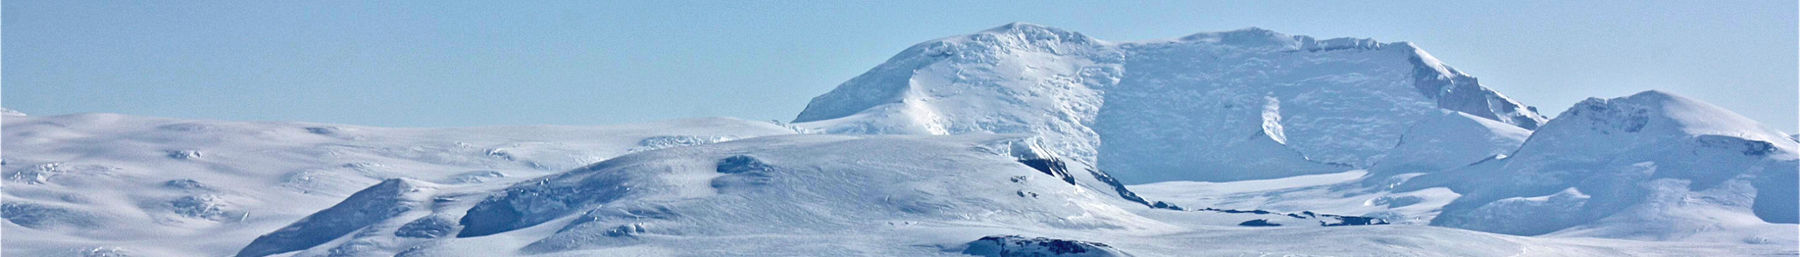 West Antarctica-banner1.jpg